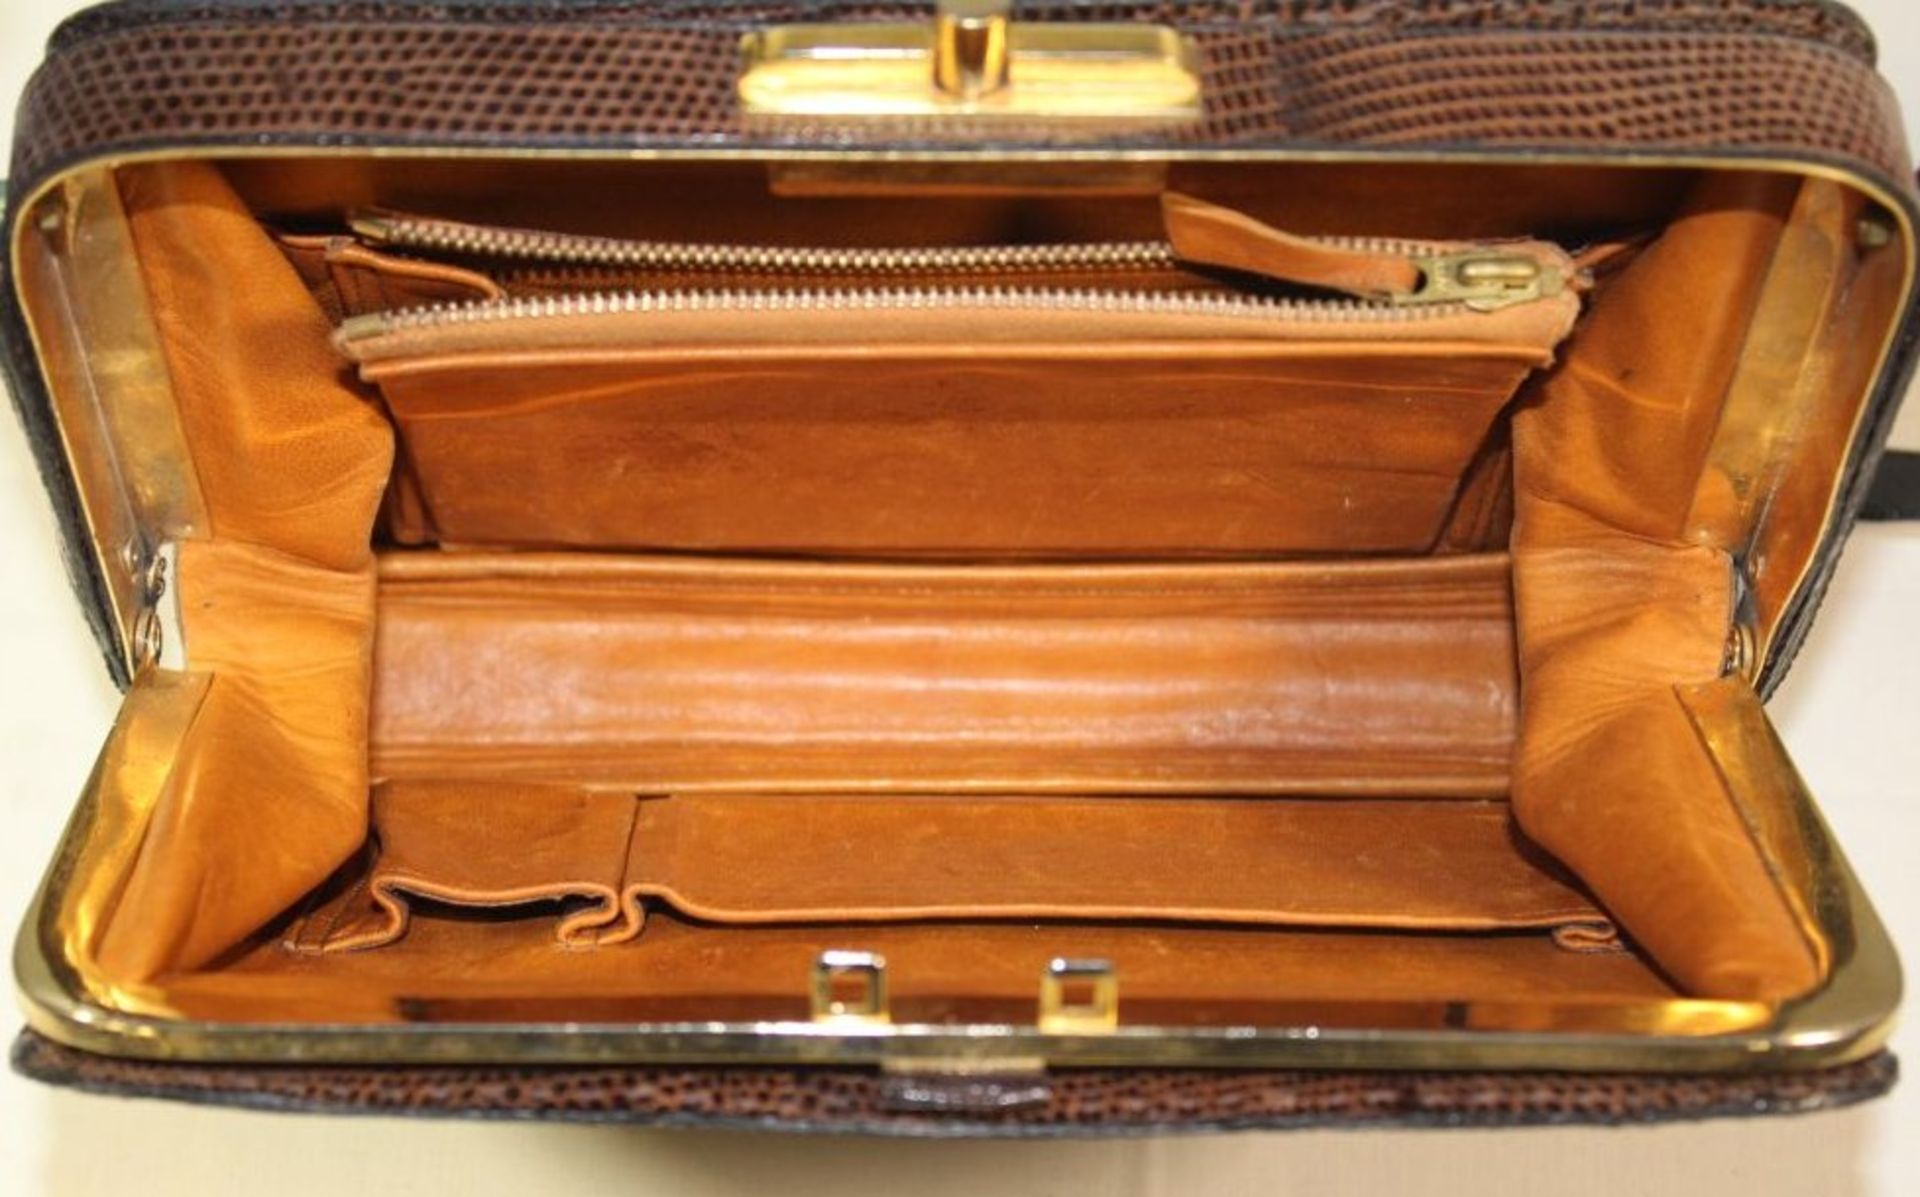 Damen-Handtasche, braunes Reptilienleder, Tragespuren, Gurt gebrochen, 19 x 22 cm. - Bild 2 aus 3